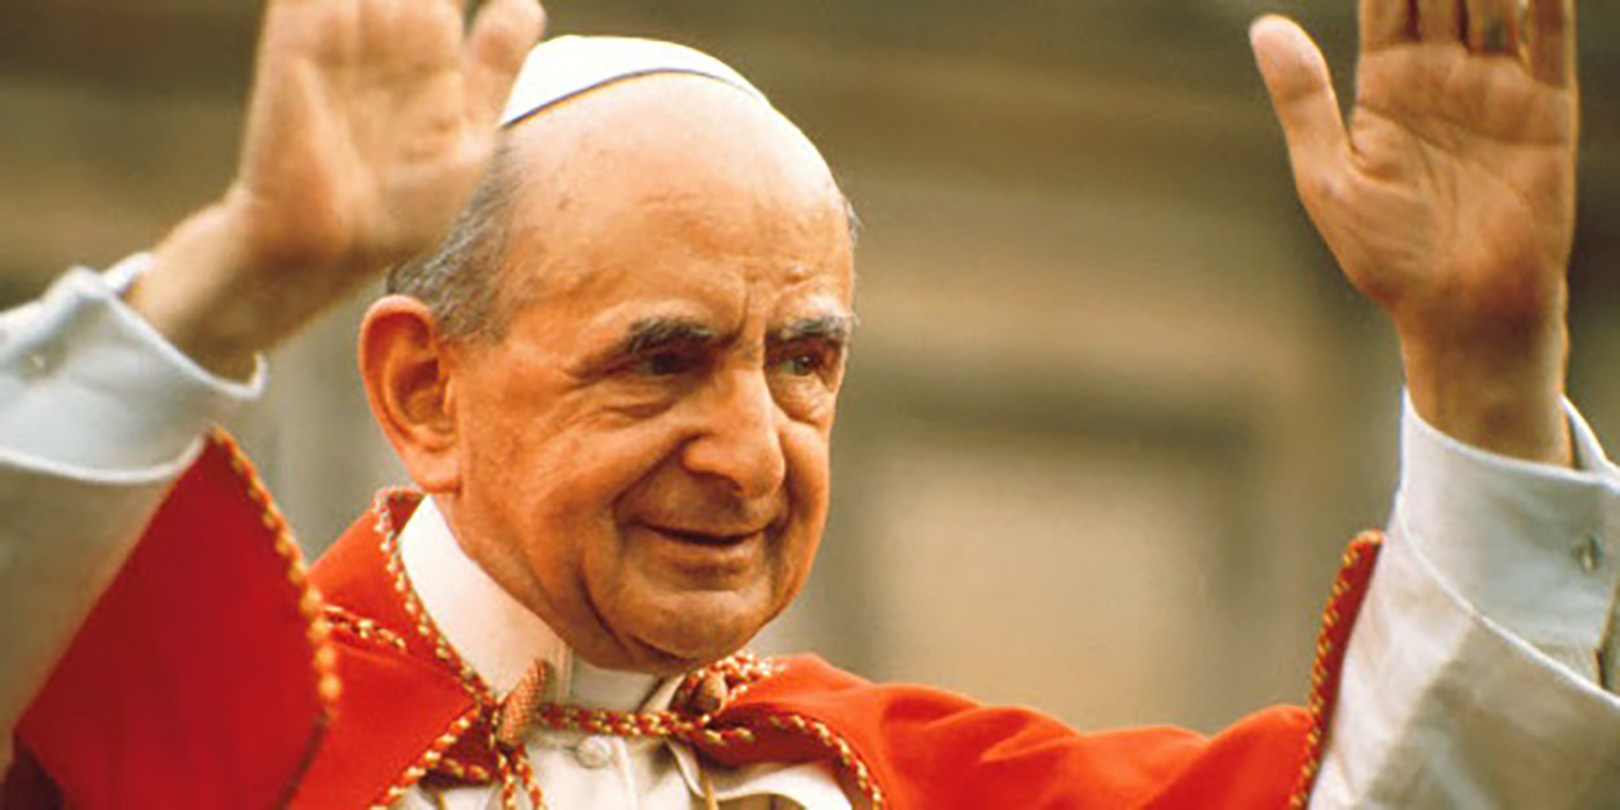 A Roma con SFERA  per la canonizzazione di Papa Paolo VI